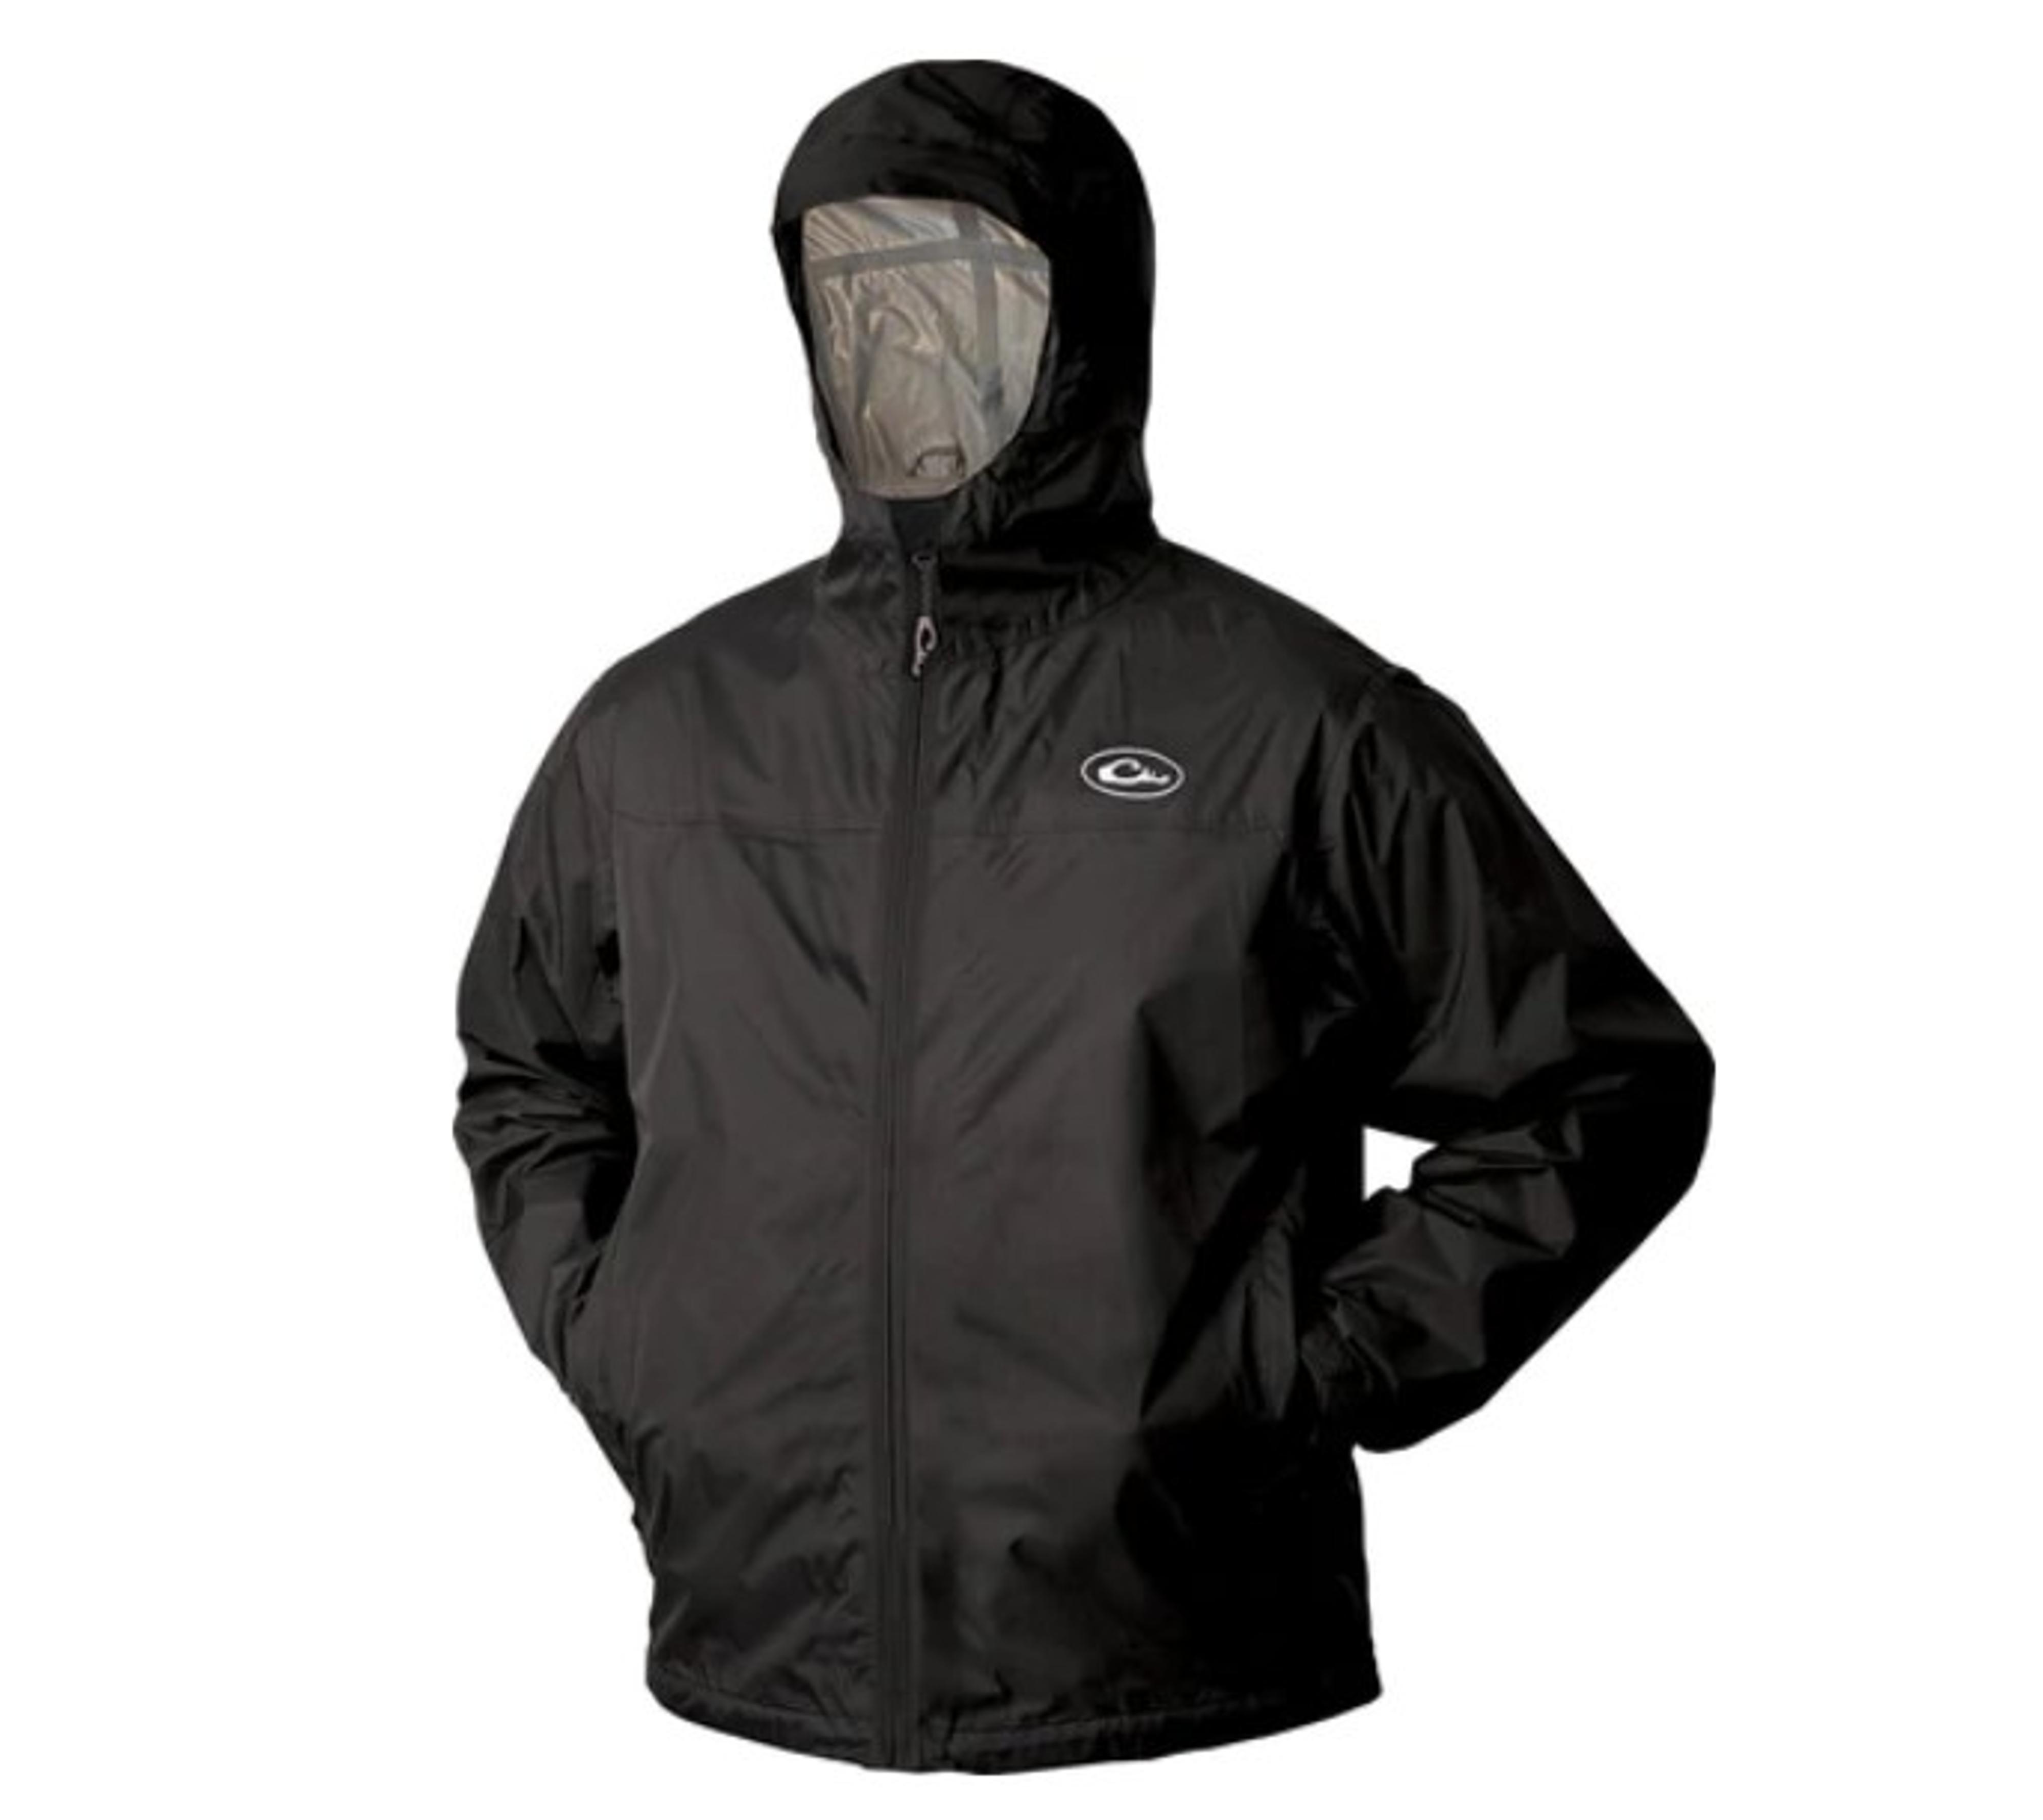  Tempest Ultralight Packable Rain Jacket